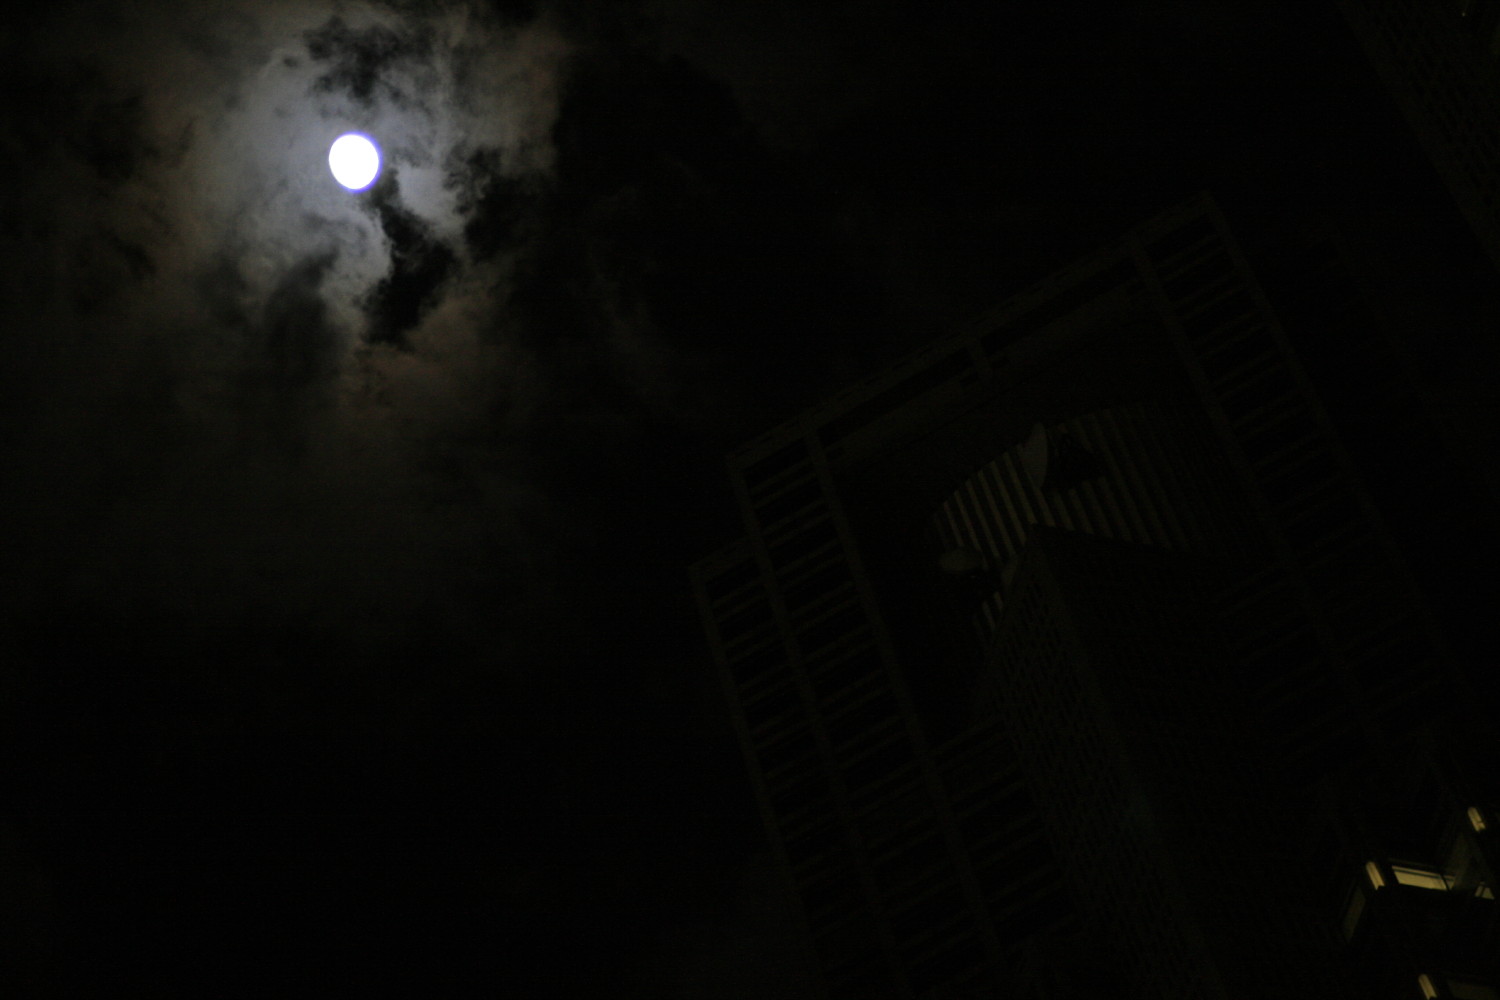 夜の街を歩きプラナー85mmで夜を撮るとどうなるのか試してみた・・・_e0022344_2343121.jpg